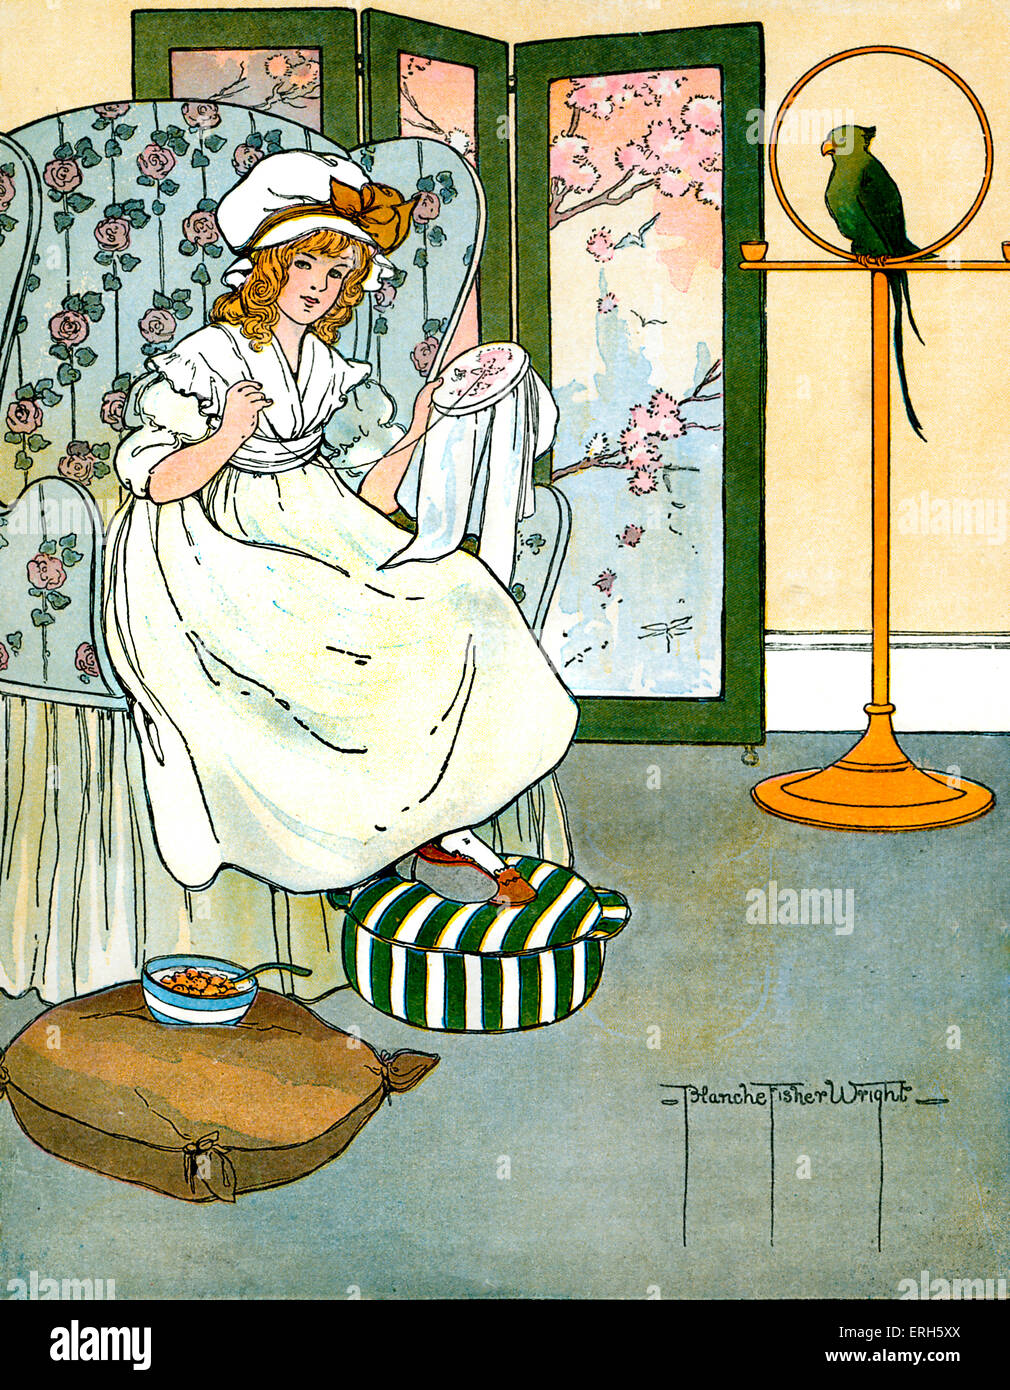 Locken, Illustration von Blanche Fisher Wright (Datum unbekannt), 1916 veröffentlicht.  "Willst du werden, locken, locken Stockfoto